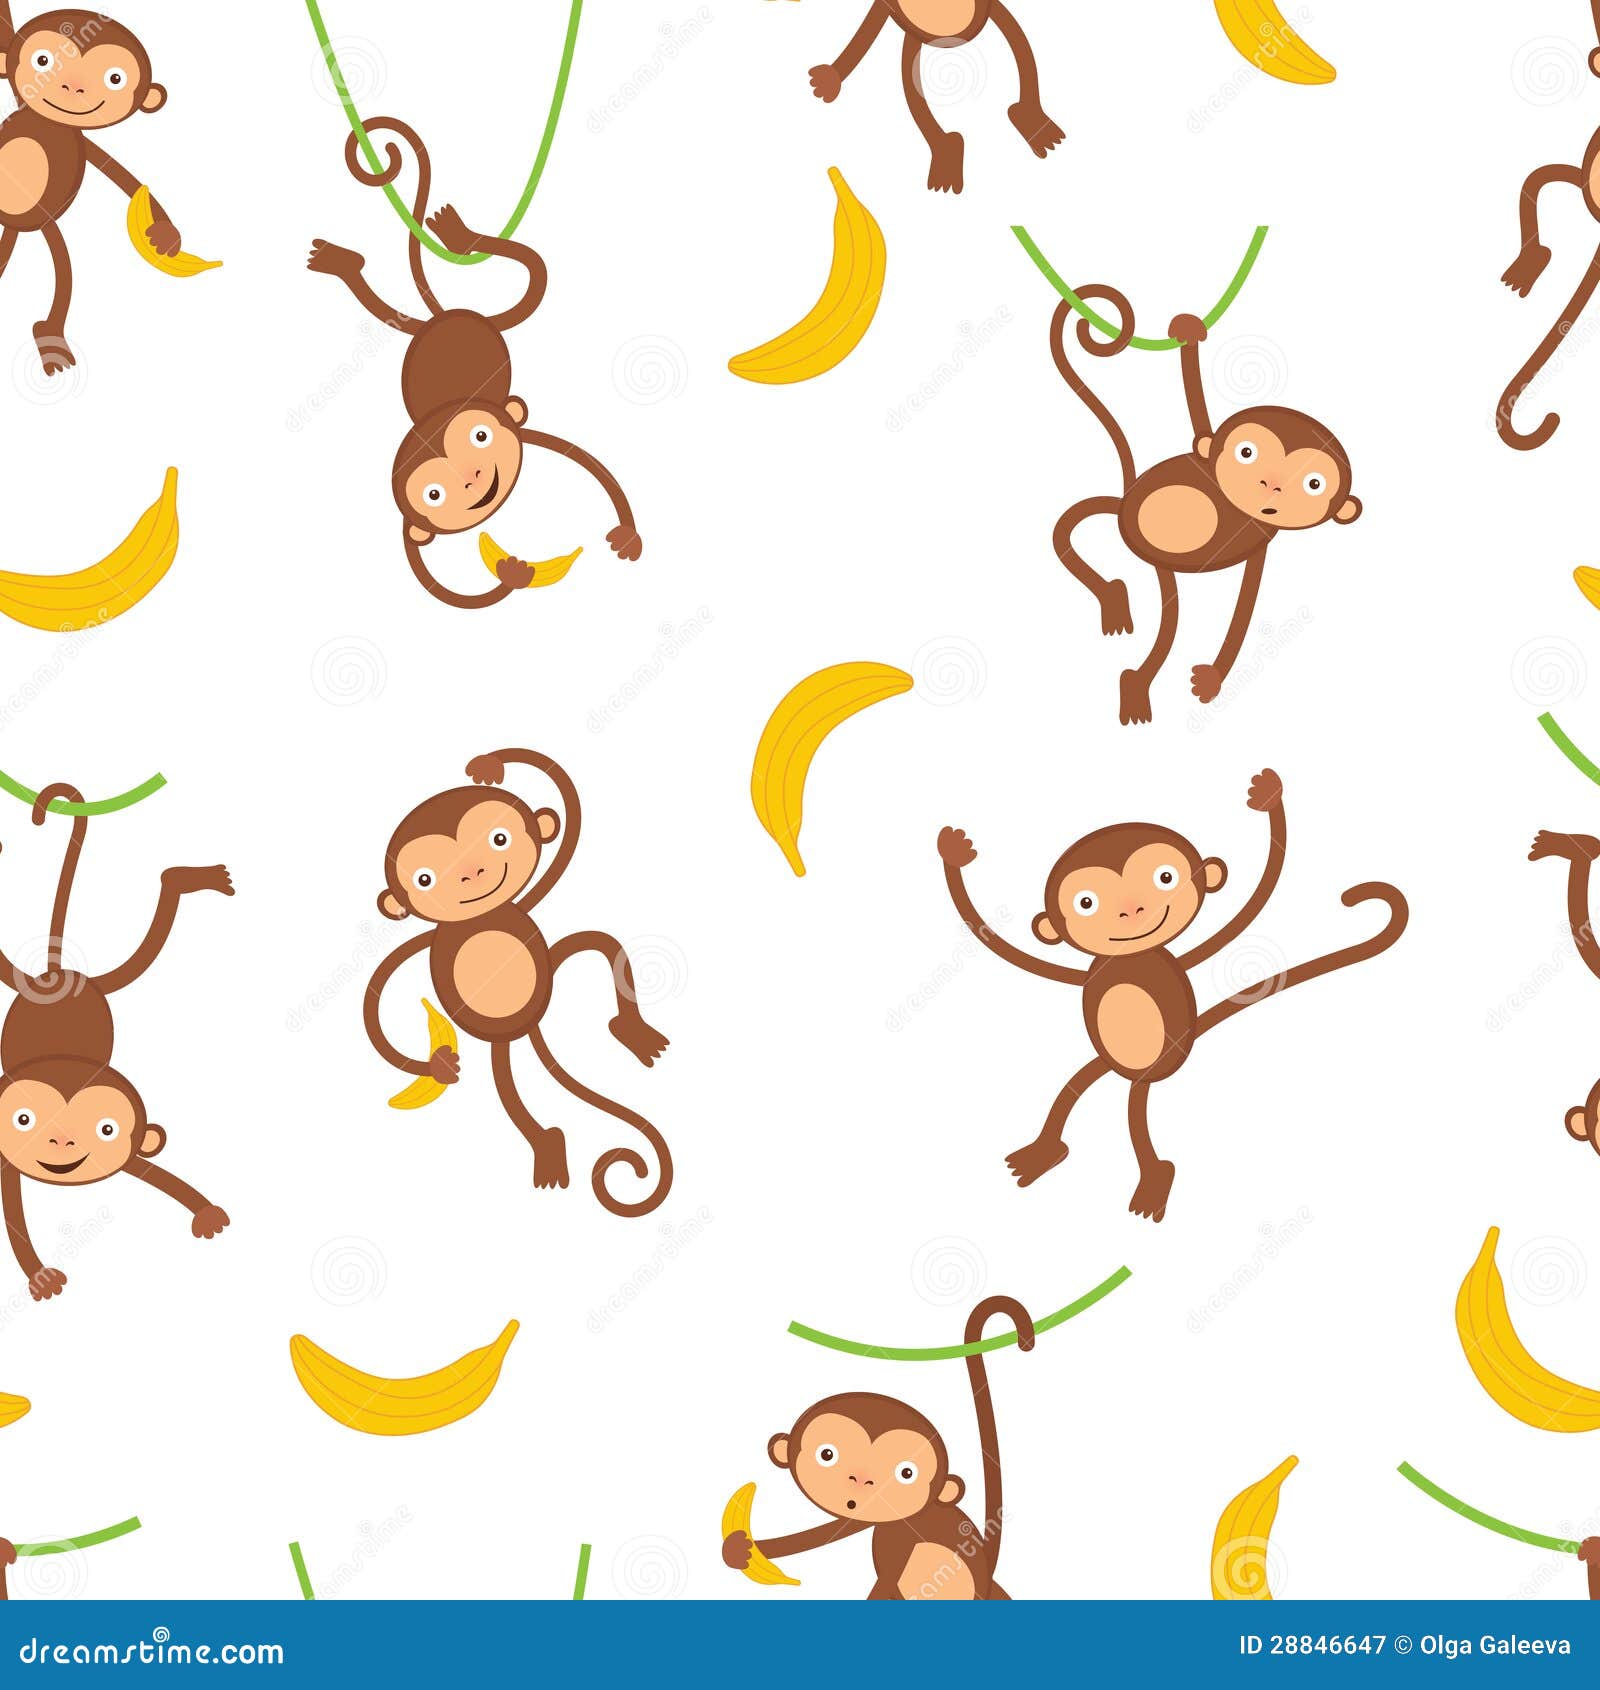 Hãy khám phá mẫu hoa văn khỉ độc đáo và vui nhộn này! Với sự kết hợp tuyệt vời giữa hình ảnh khỉ và màu sắc nổi bật, mẫu hoa văn này sẽ khiến cho bất kỳ sản phẩm nào trông thêm sinh động và hấp dẫn!